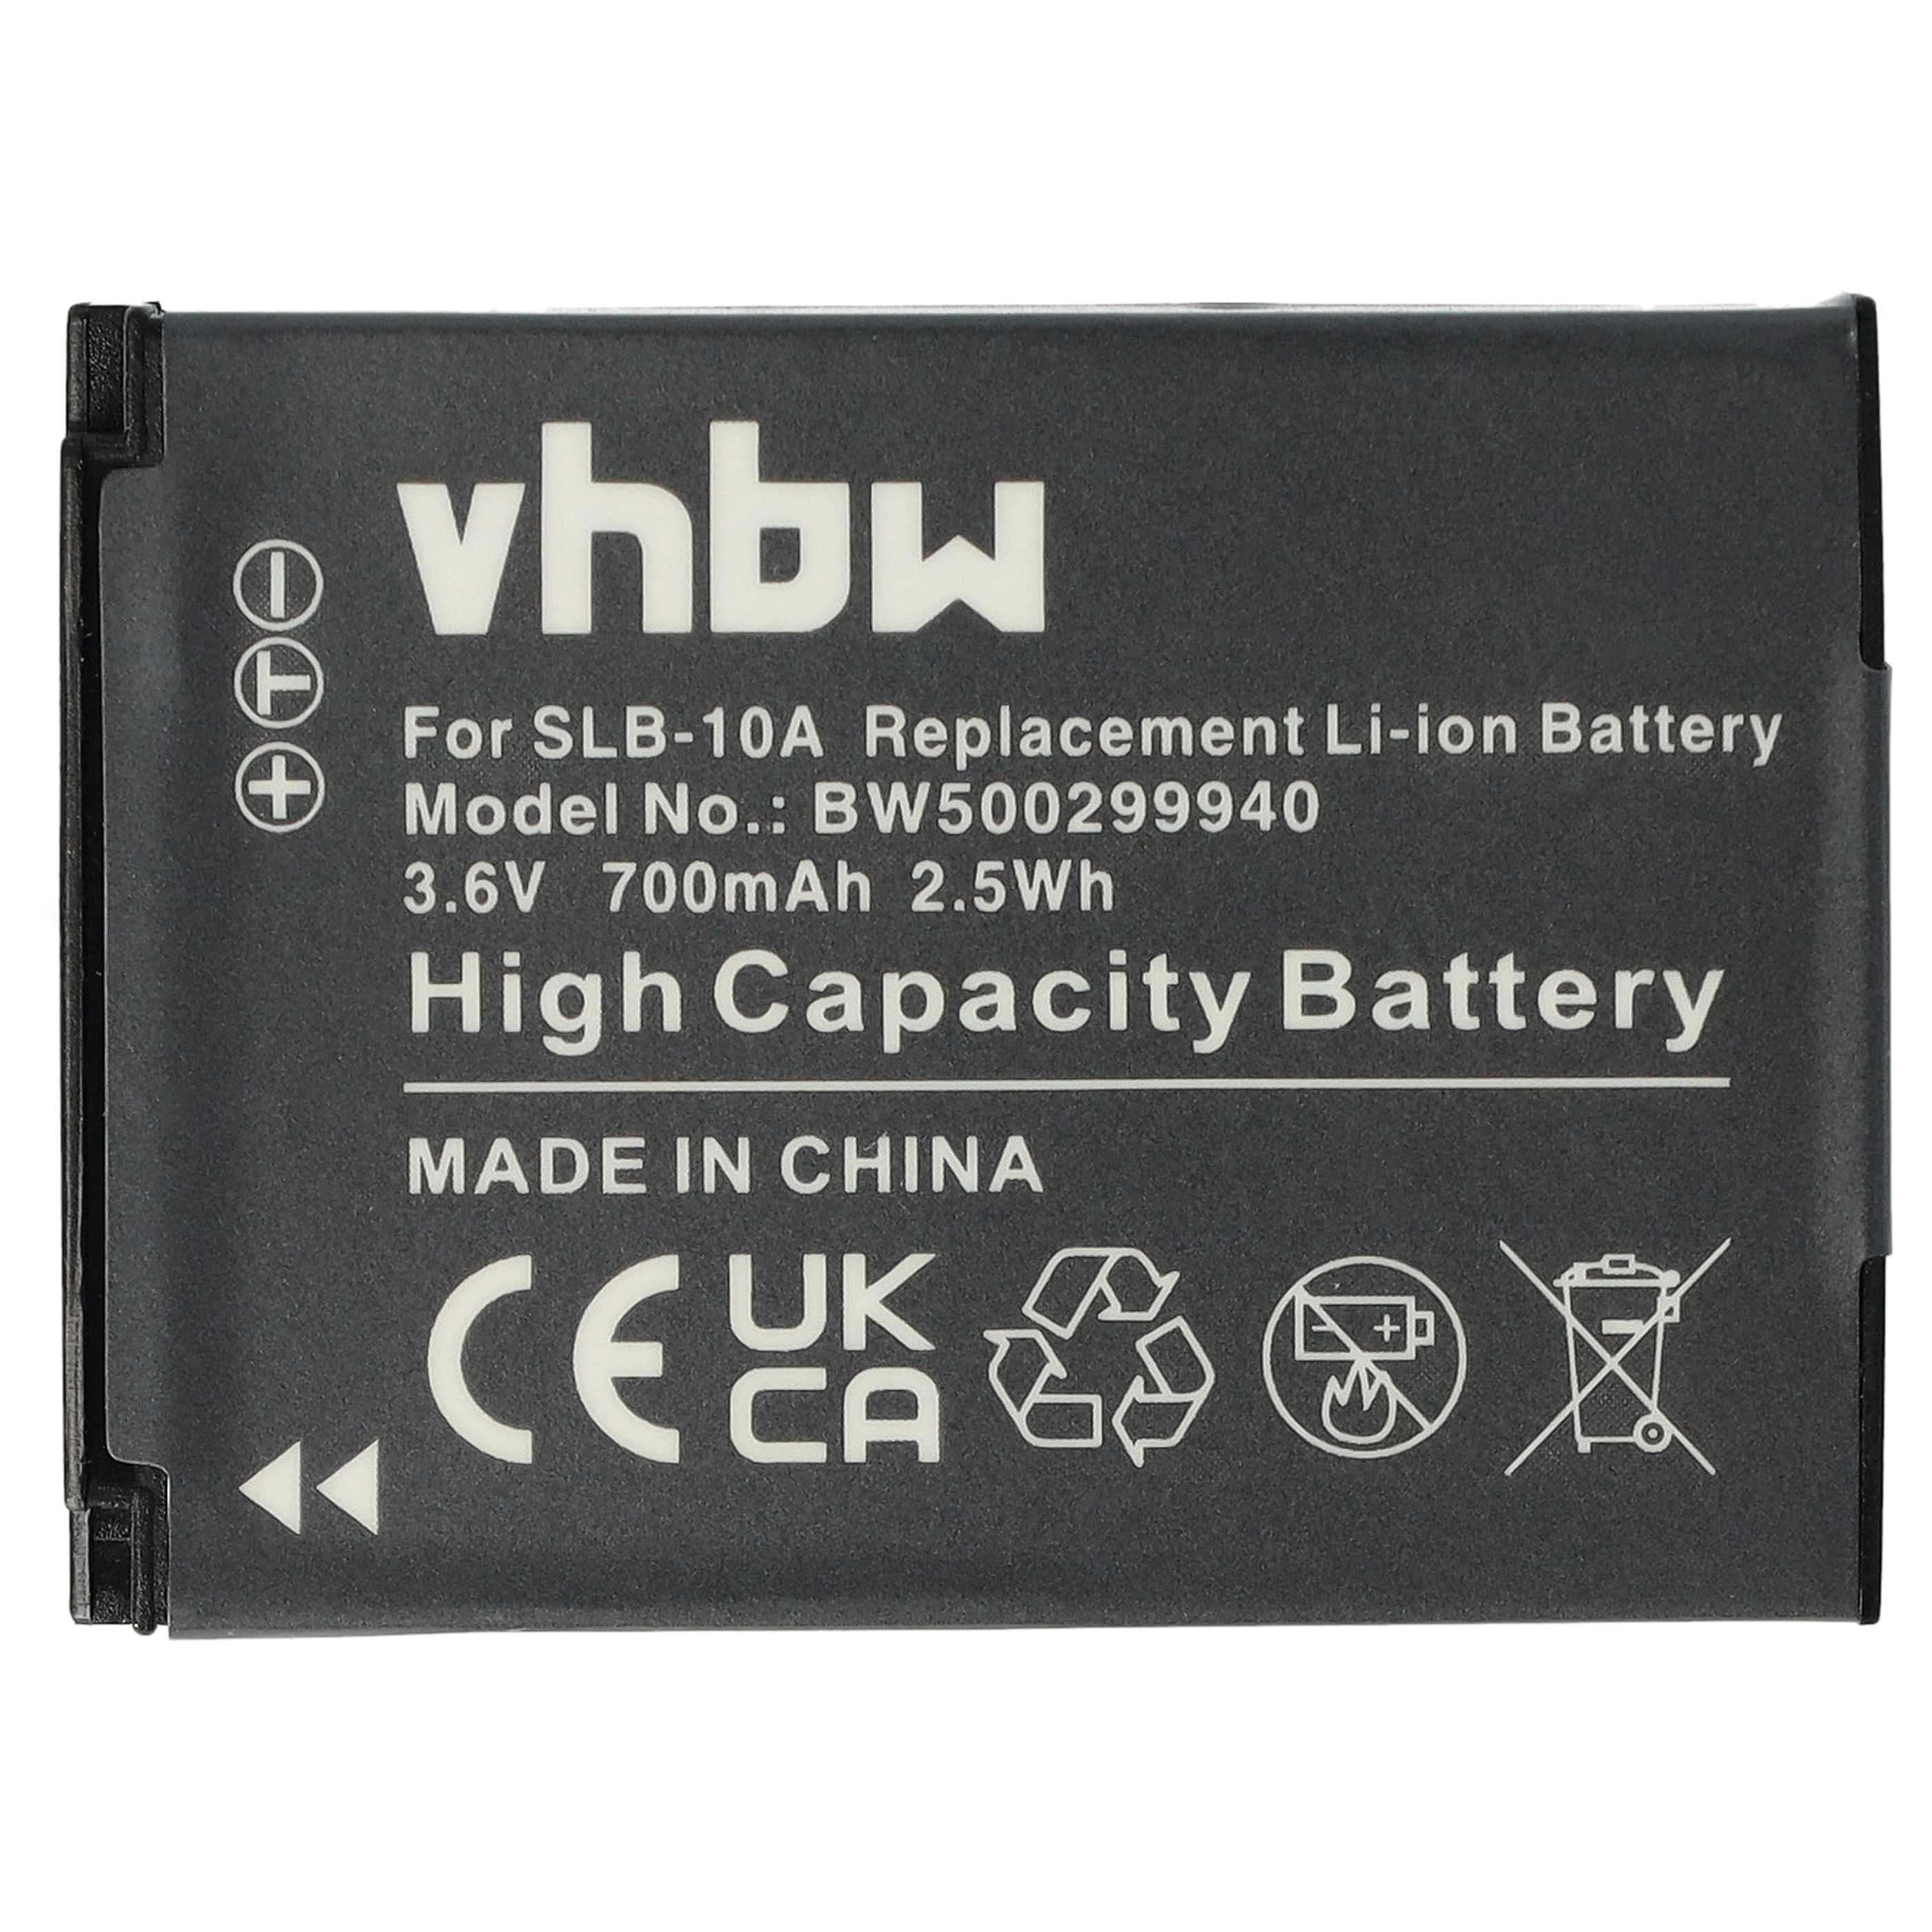 Batterie remplace Samsung BP-10A, SLB-10A, BP10A pour appareil photo - 700mAh 3,6V Li-ion